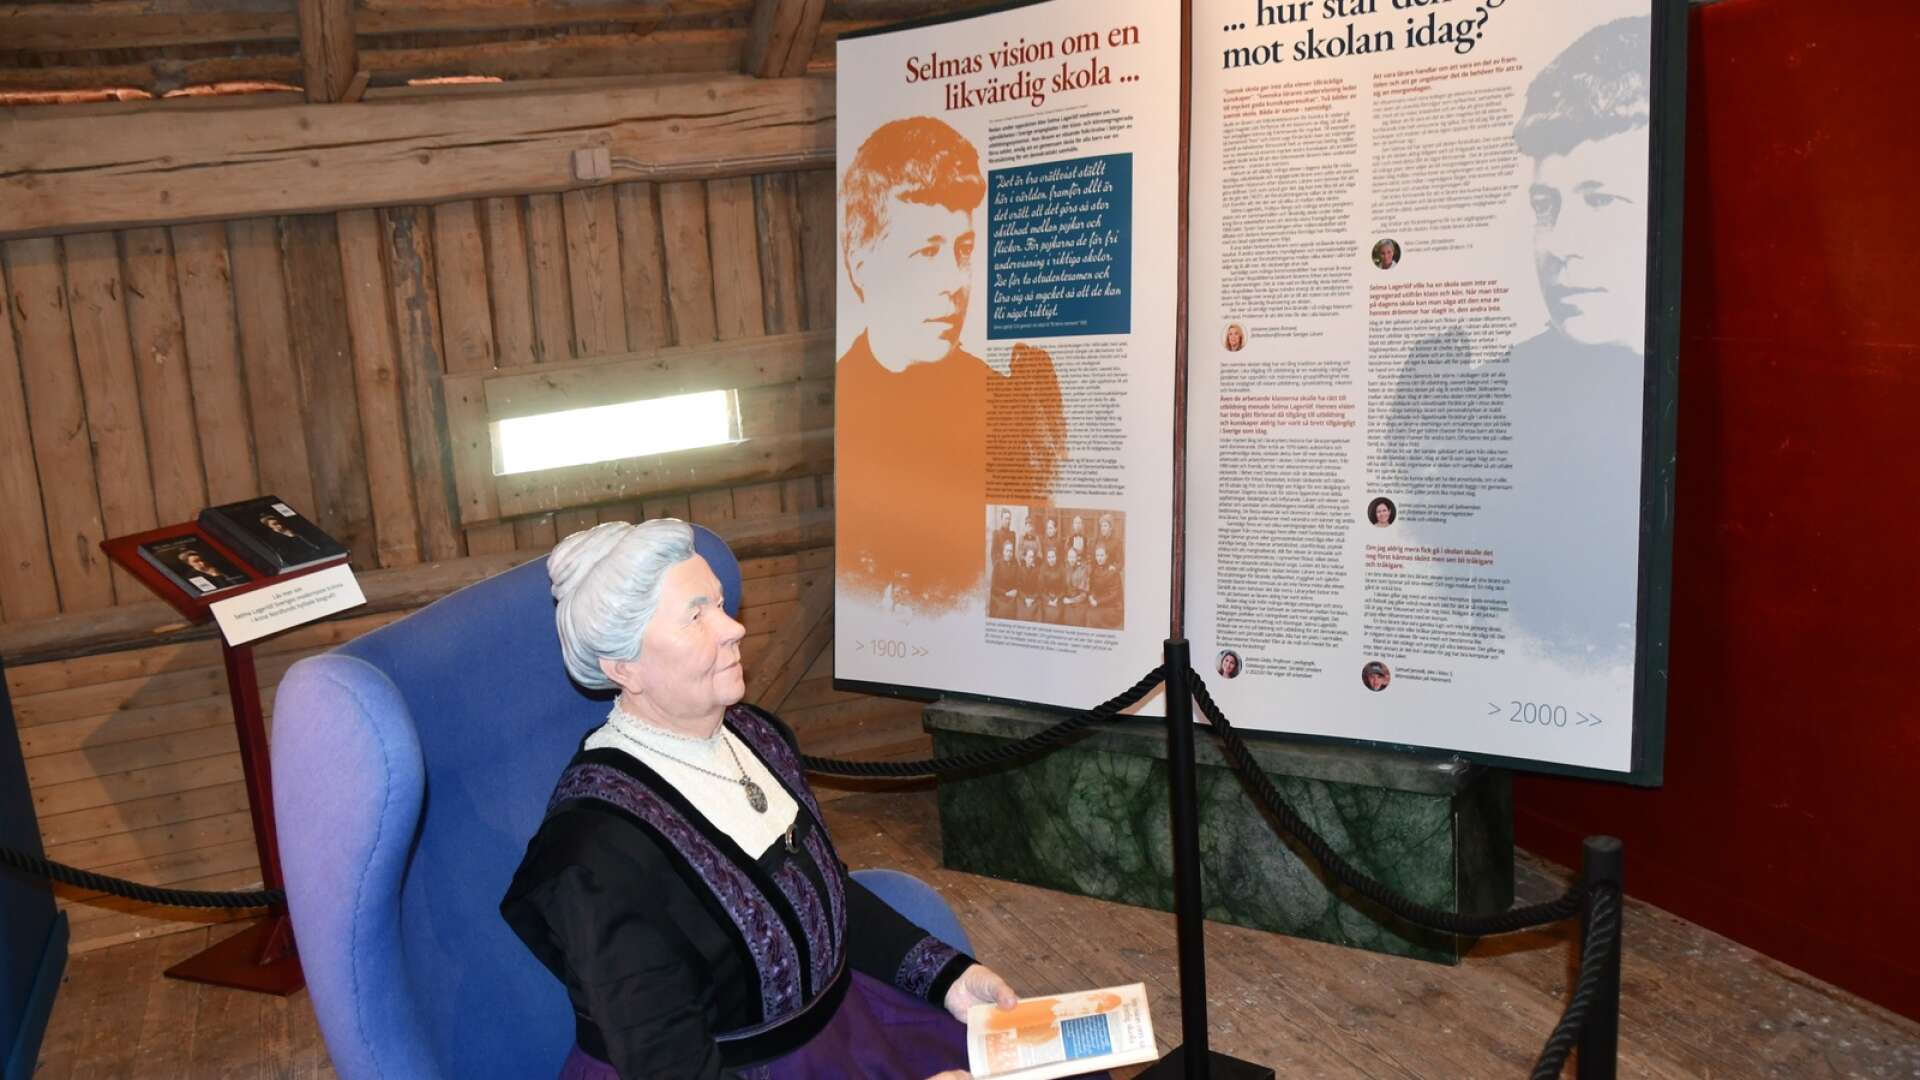 När Lärarstiftelsen nu donerar utställningen till Mårbackastiftelsen har den kompletterats med berättelsen om Selma Lagerlöfs roll och engagemang i kampen för en gemensam likvärdig skola för alla barn.